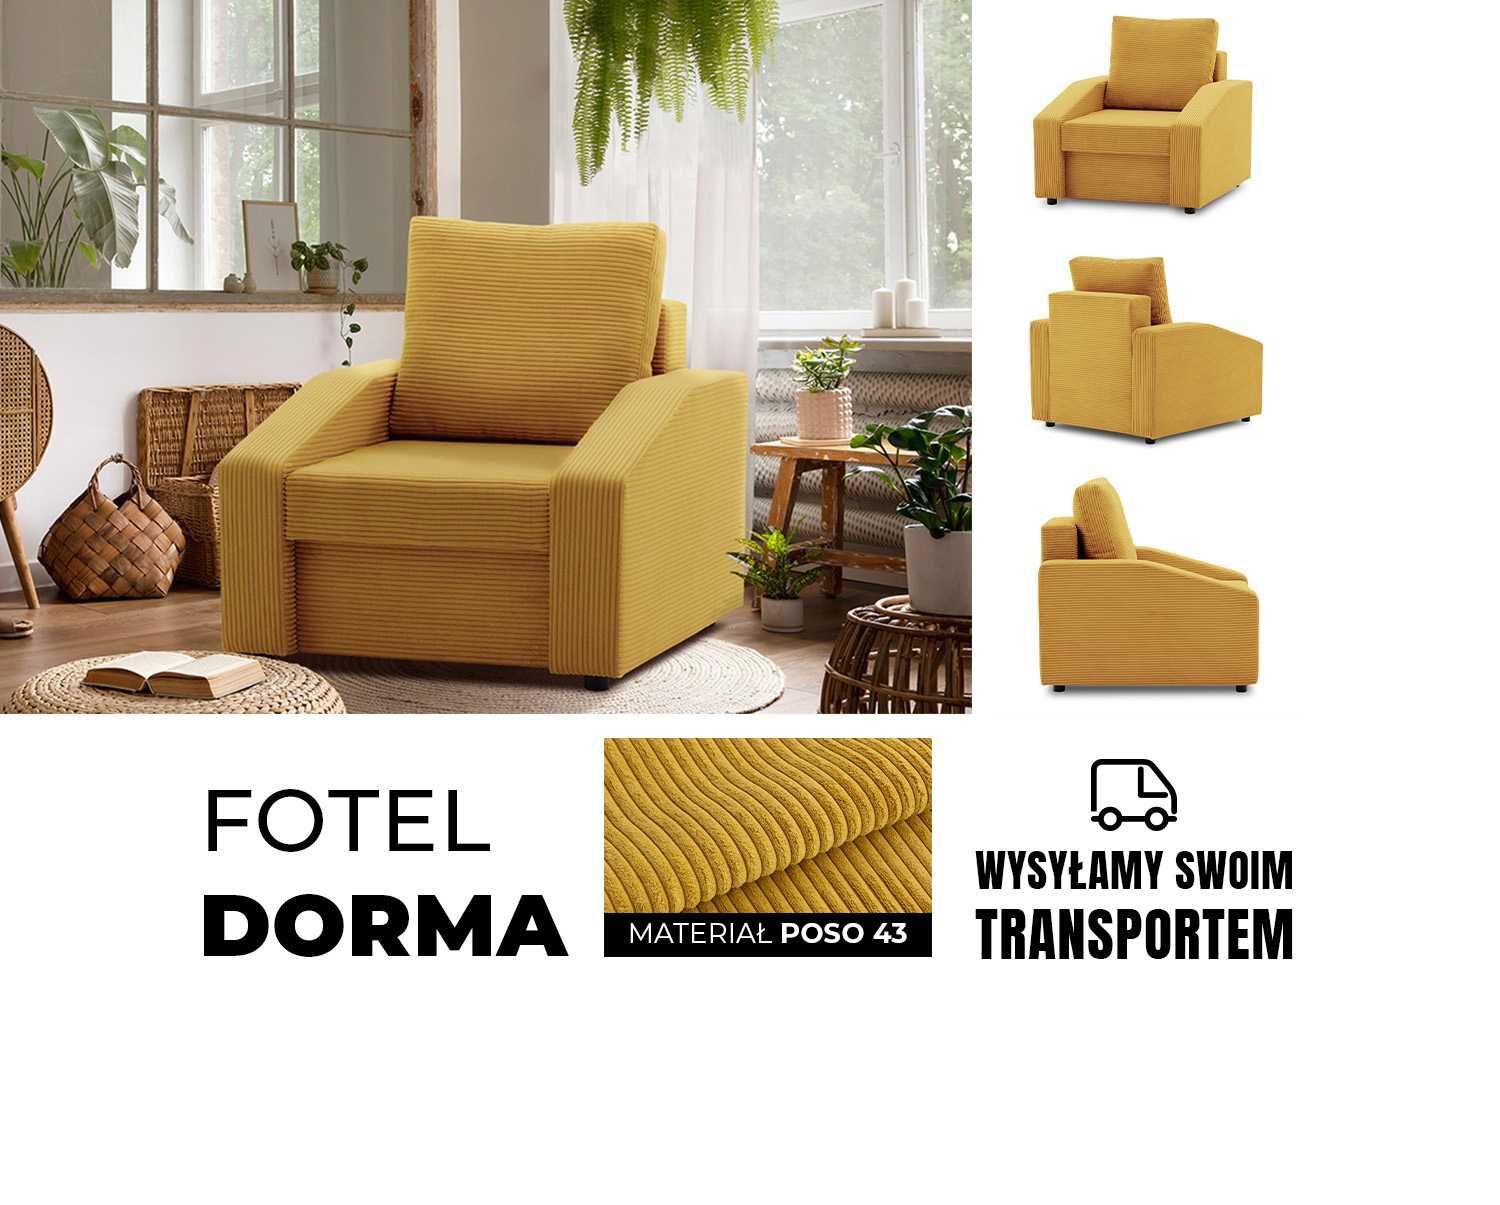 Fotel DORMA / sofa sofka kanapa kolekcja Dorma / SZYBKA DOSTAWA